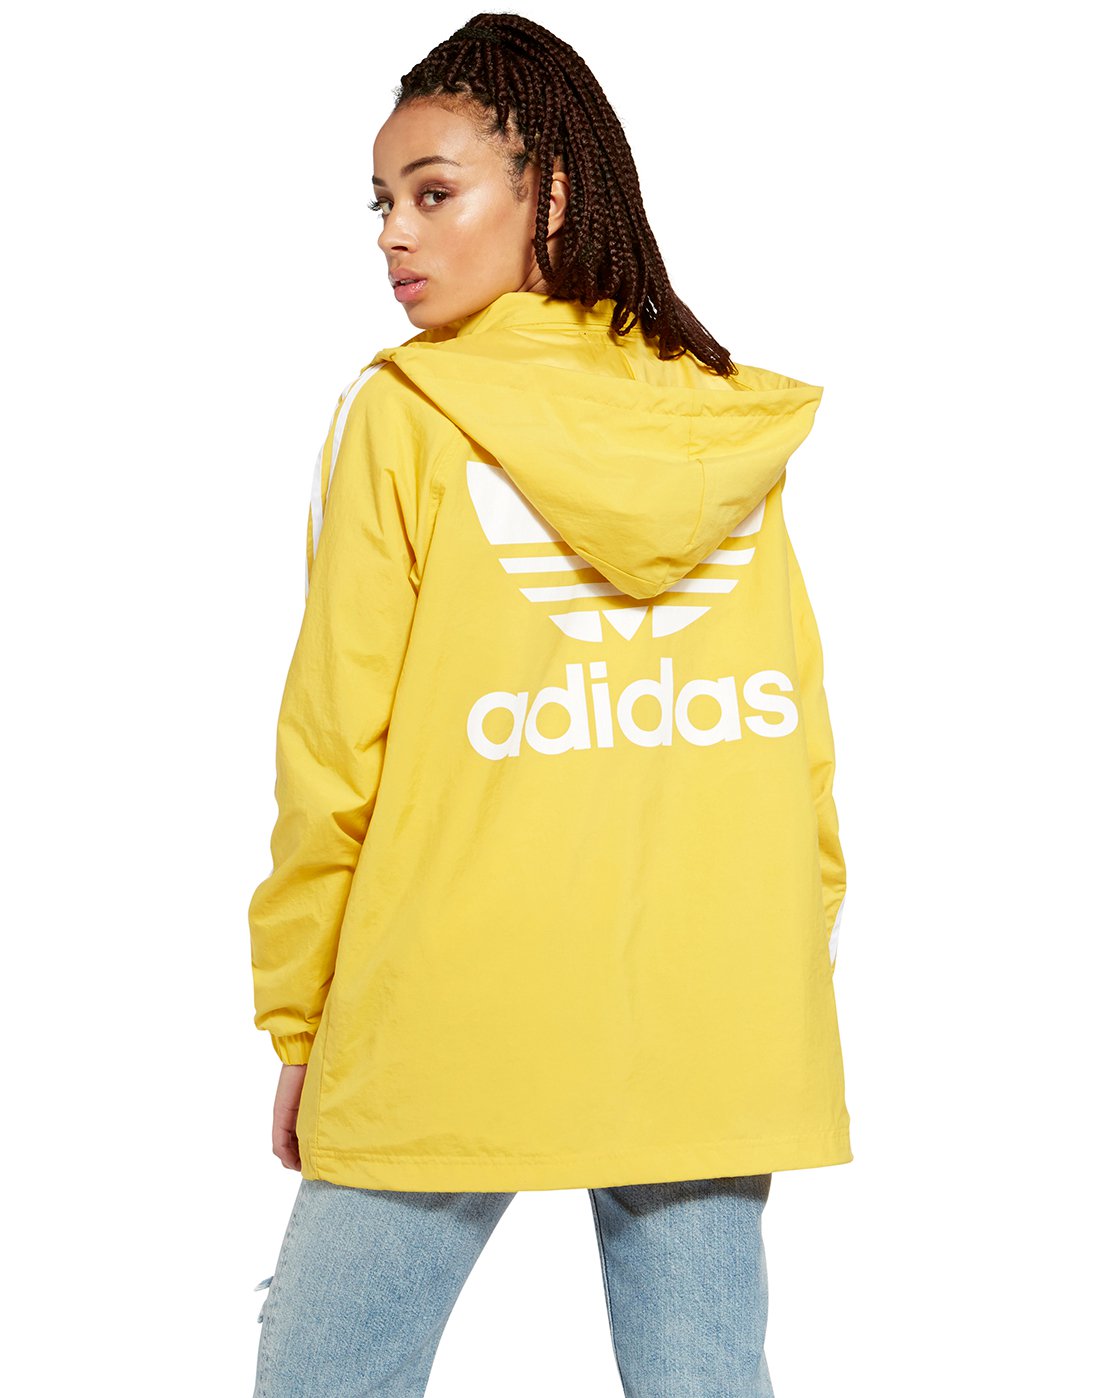 adidas yellow stadium jacket